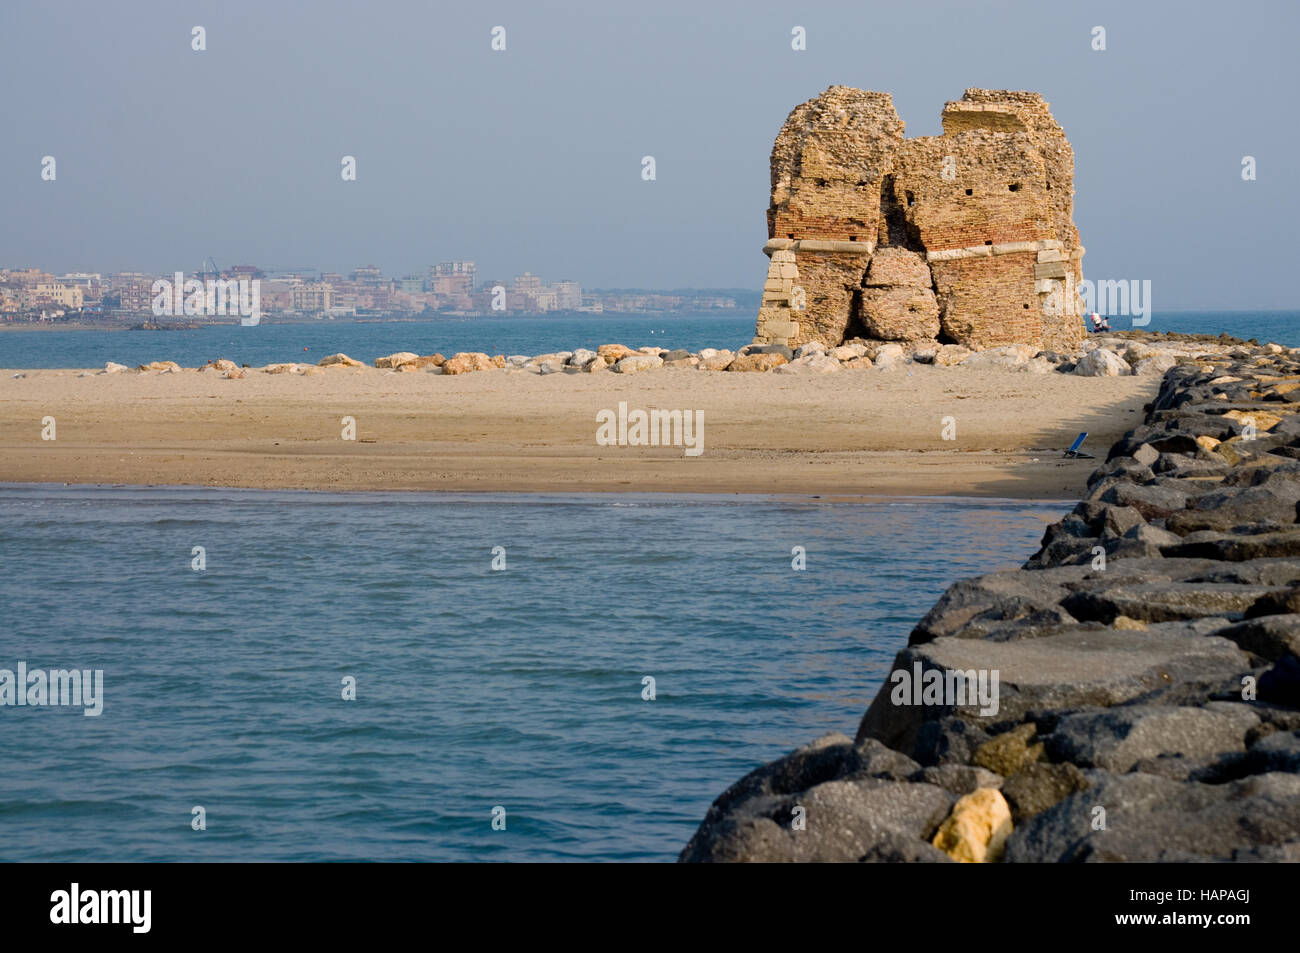 Sur la plage de Cerveteri, près de Rome, vous pouvez trouver une vieille tour en ruine Banque D'Images